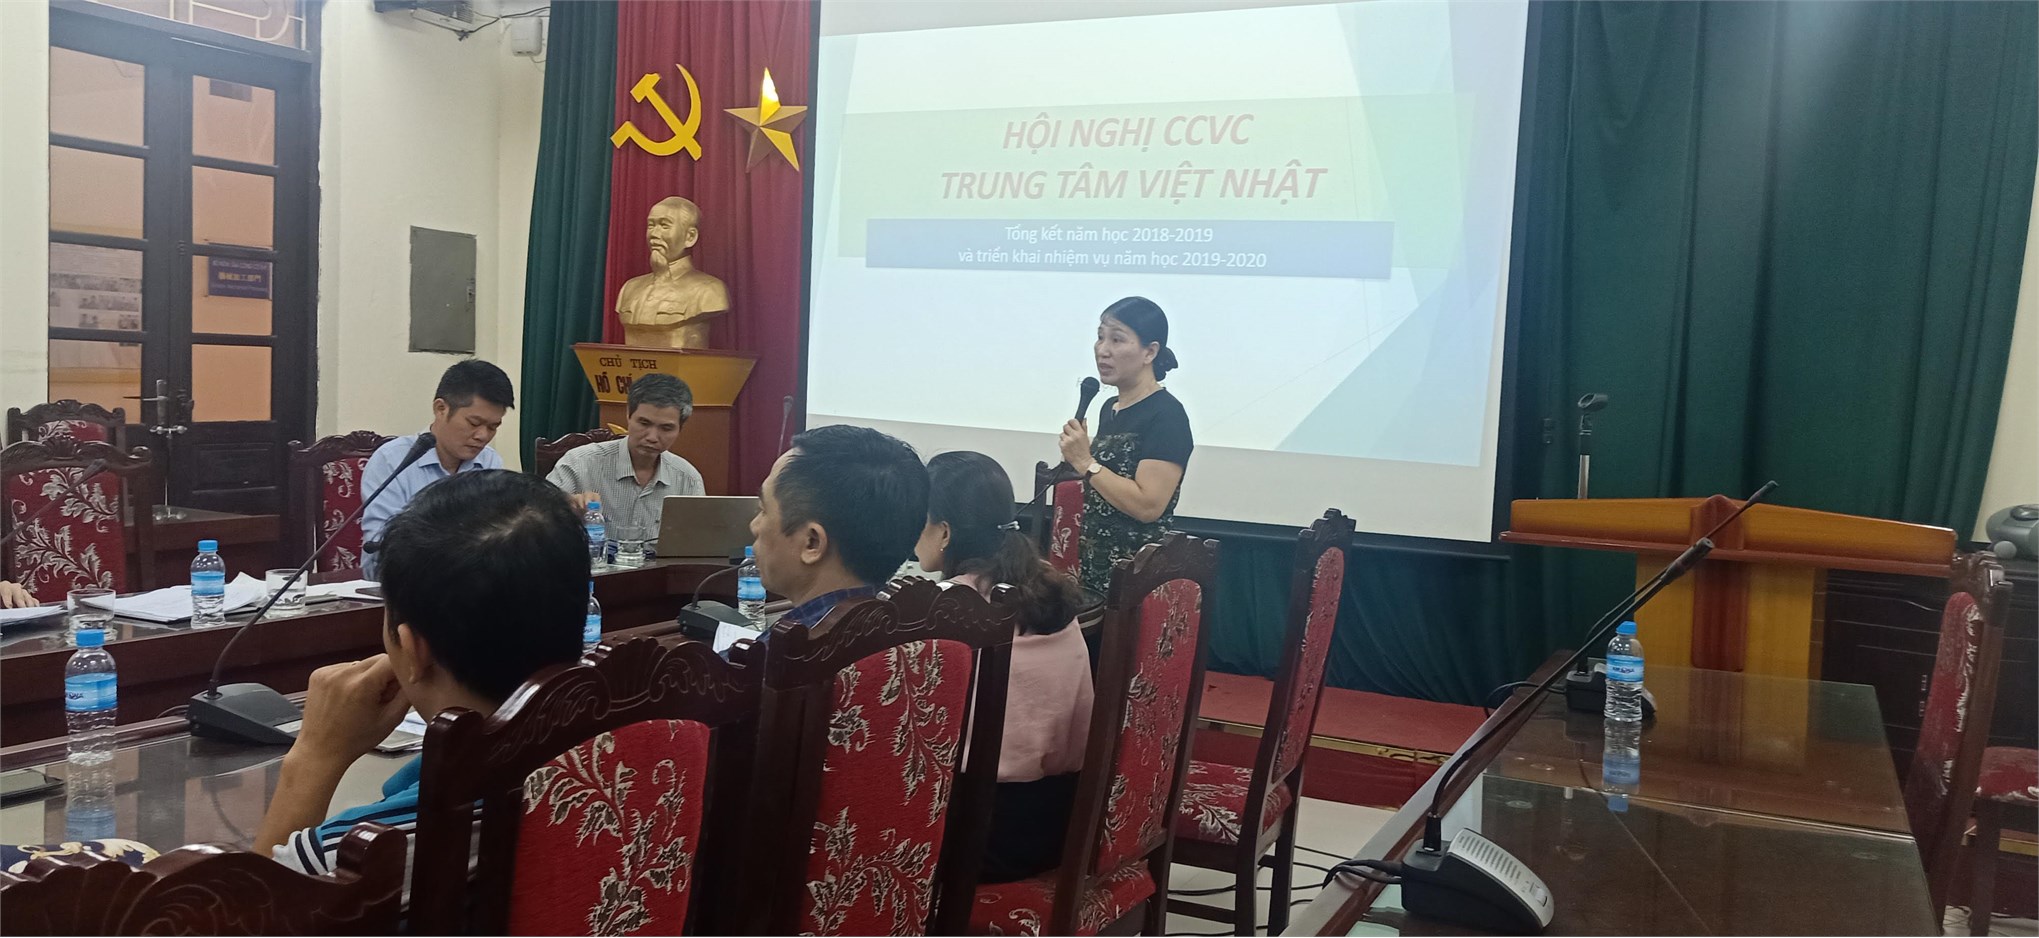 Hội nghị công chức viên chức năm học 2018 – 2019 của TT Việt Nhật